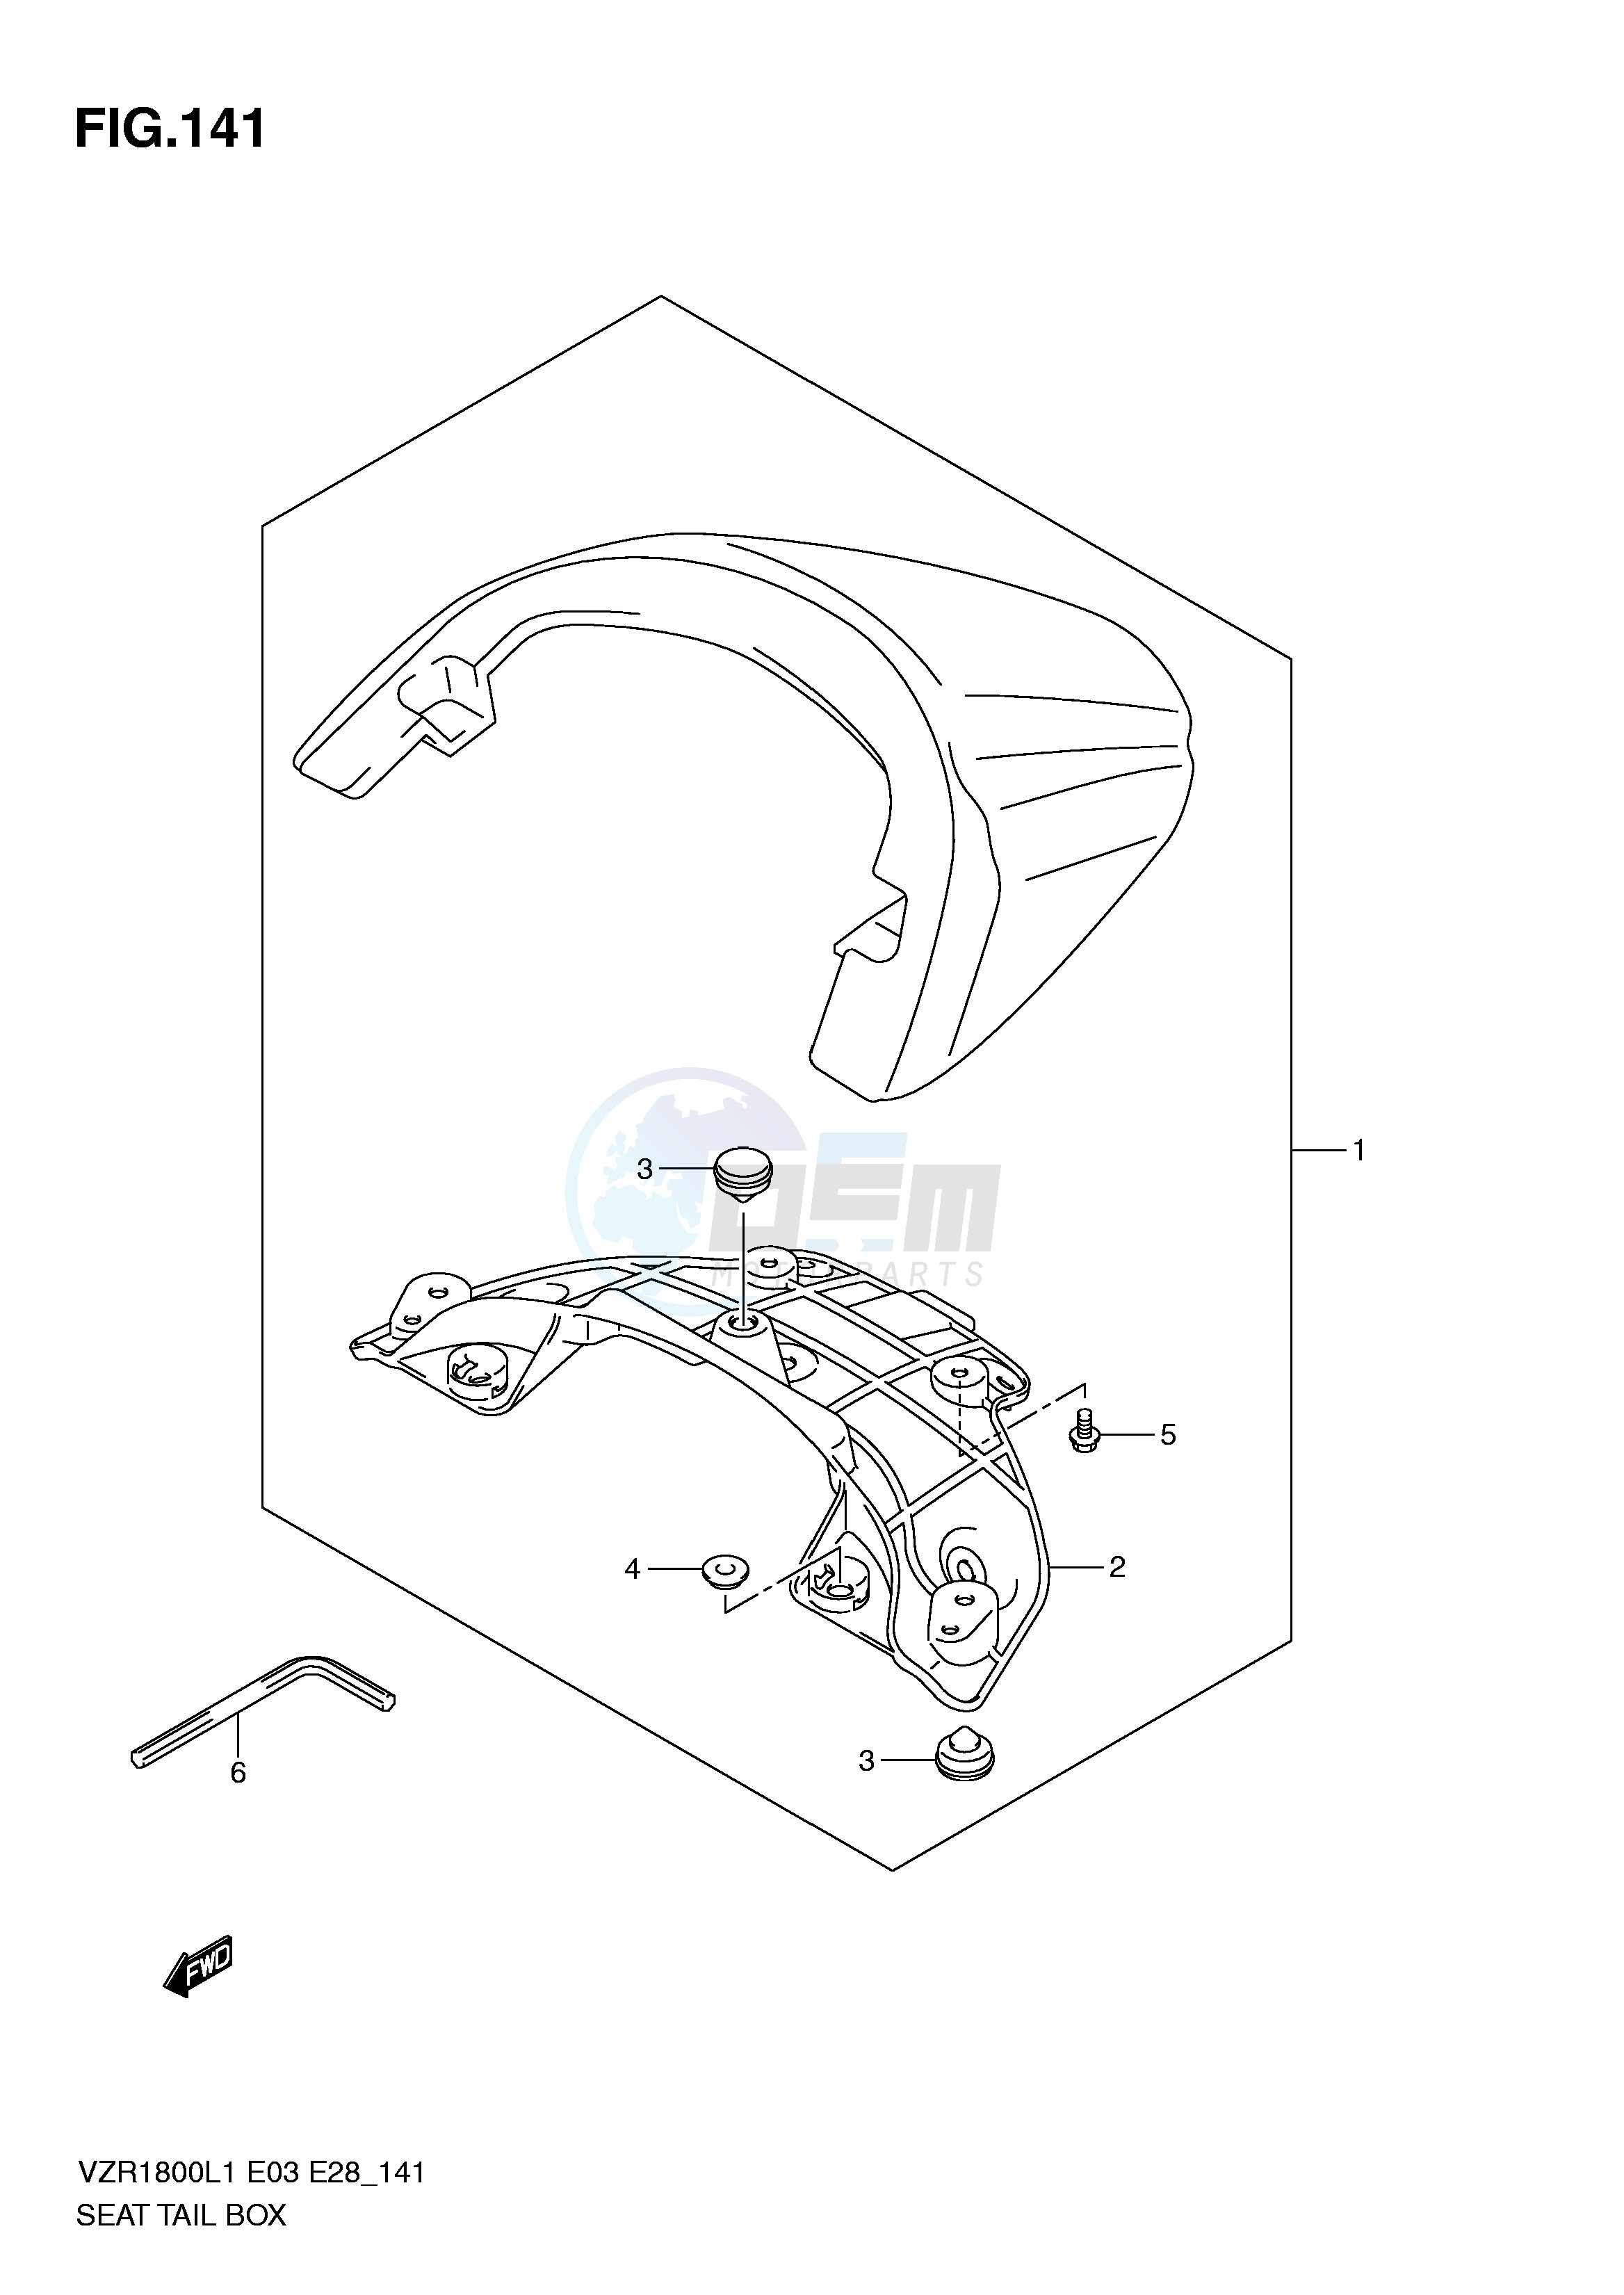 SEAT TAIL BOX (VZR1800L1 E33) blueprint